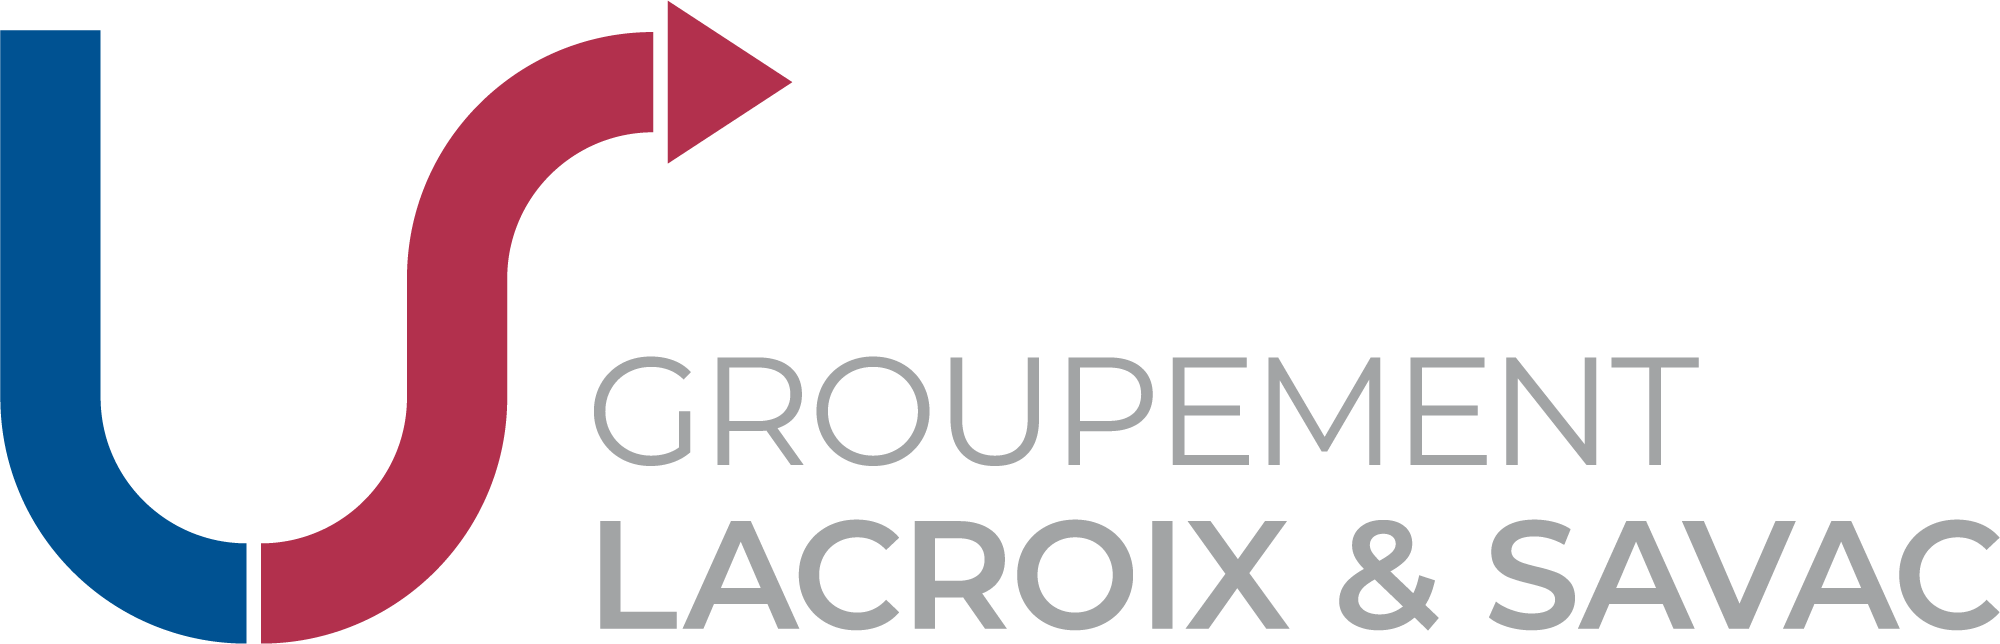 Le logo de Groupement Lacroix & Savac